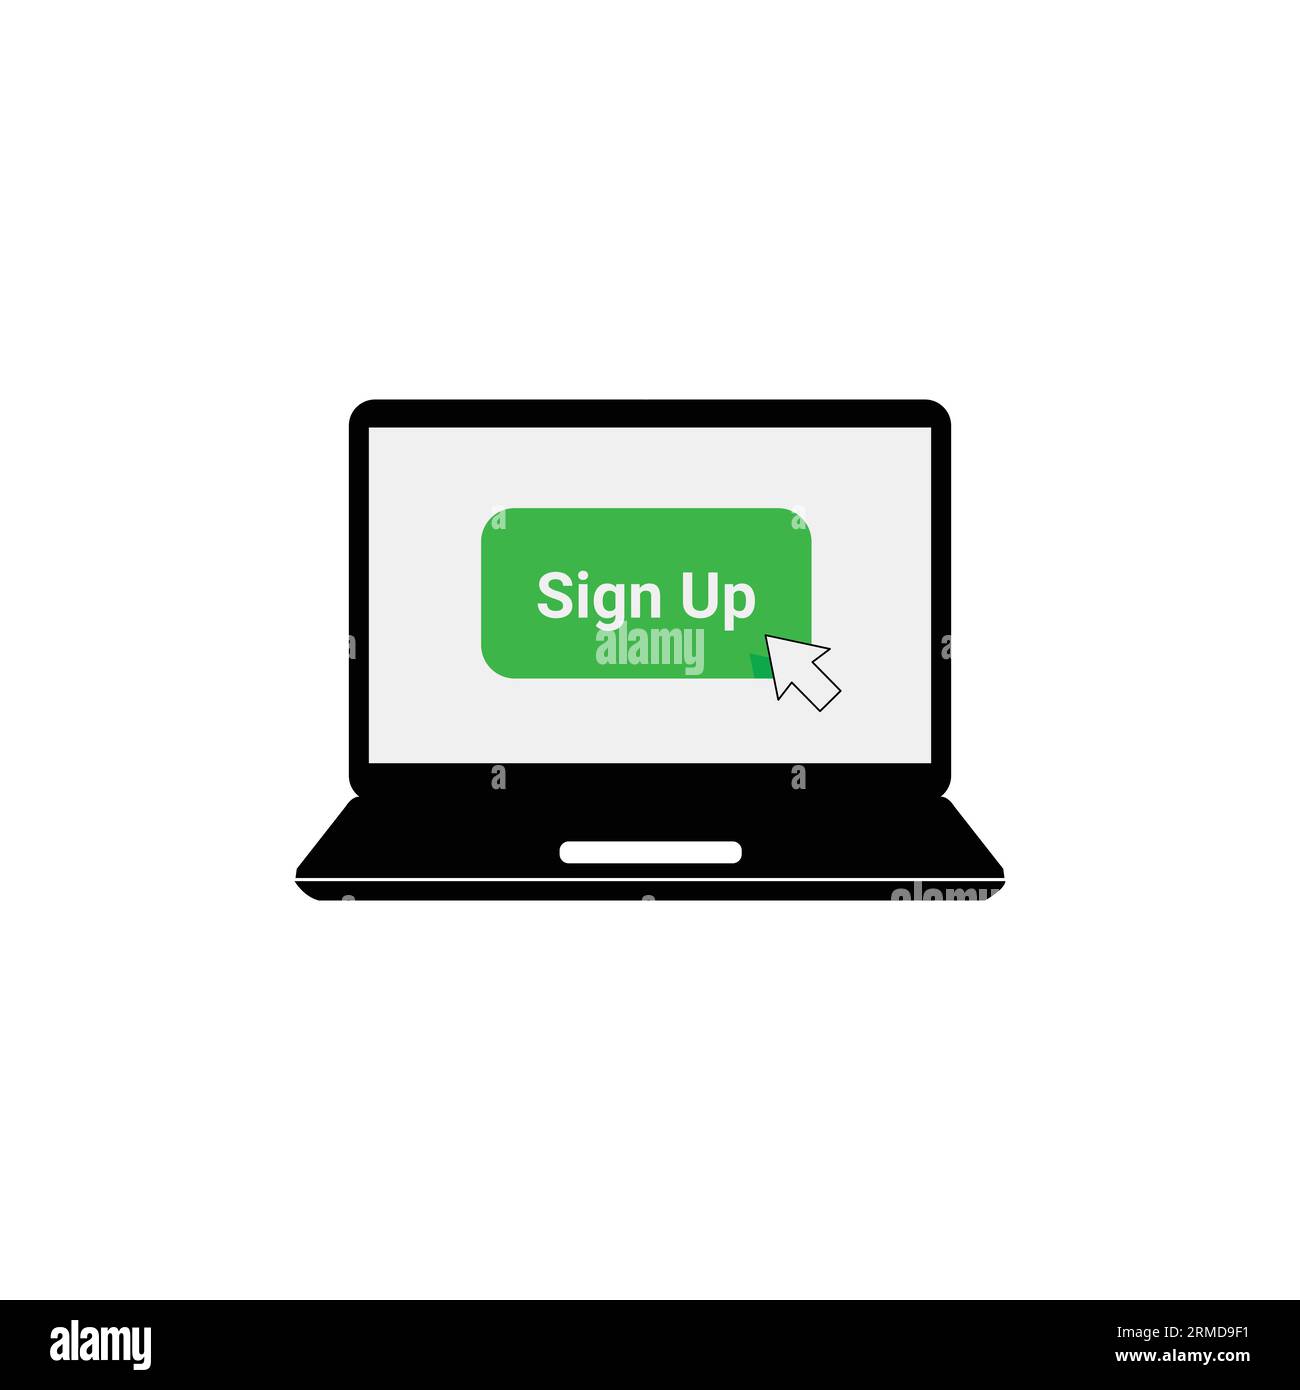 Grüne Anmeldetaste auf dem Laptop-Bildschirm. Konzept der Anmeldung vor Ort oder jetzt für Community- und offene Registrierung. Flache Zeichentrickgrafik mit modernem Logo Stock Vektor